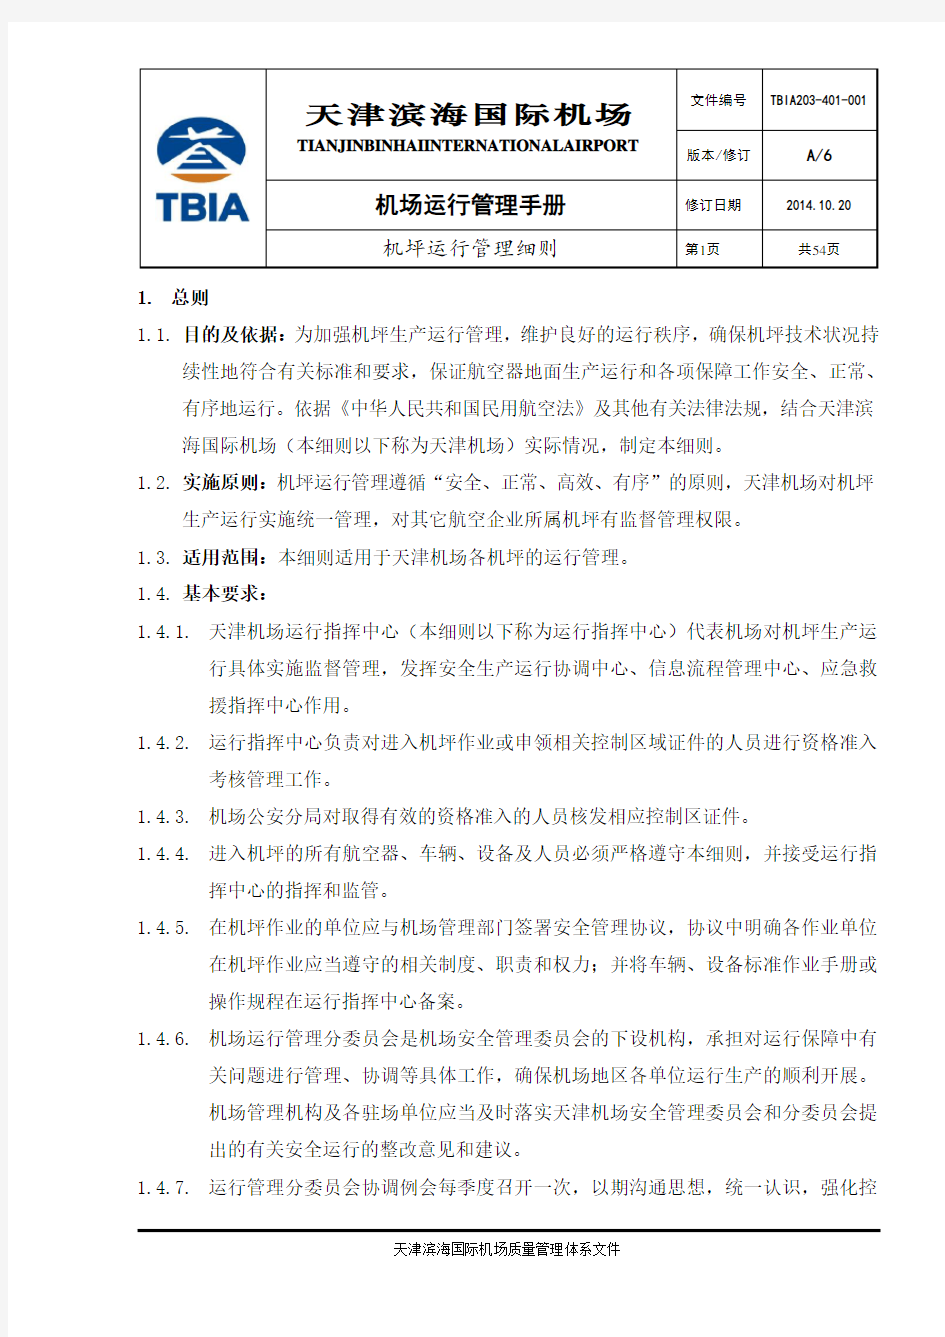 天津机场机坪运行管理细则A6版(201411修改)